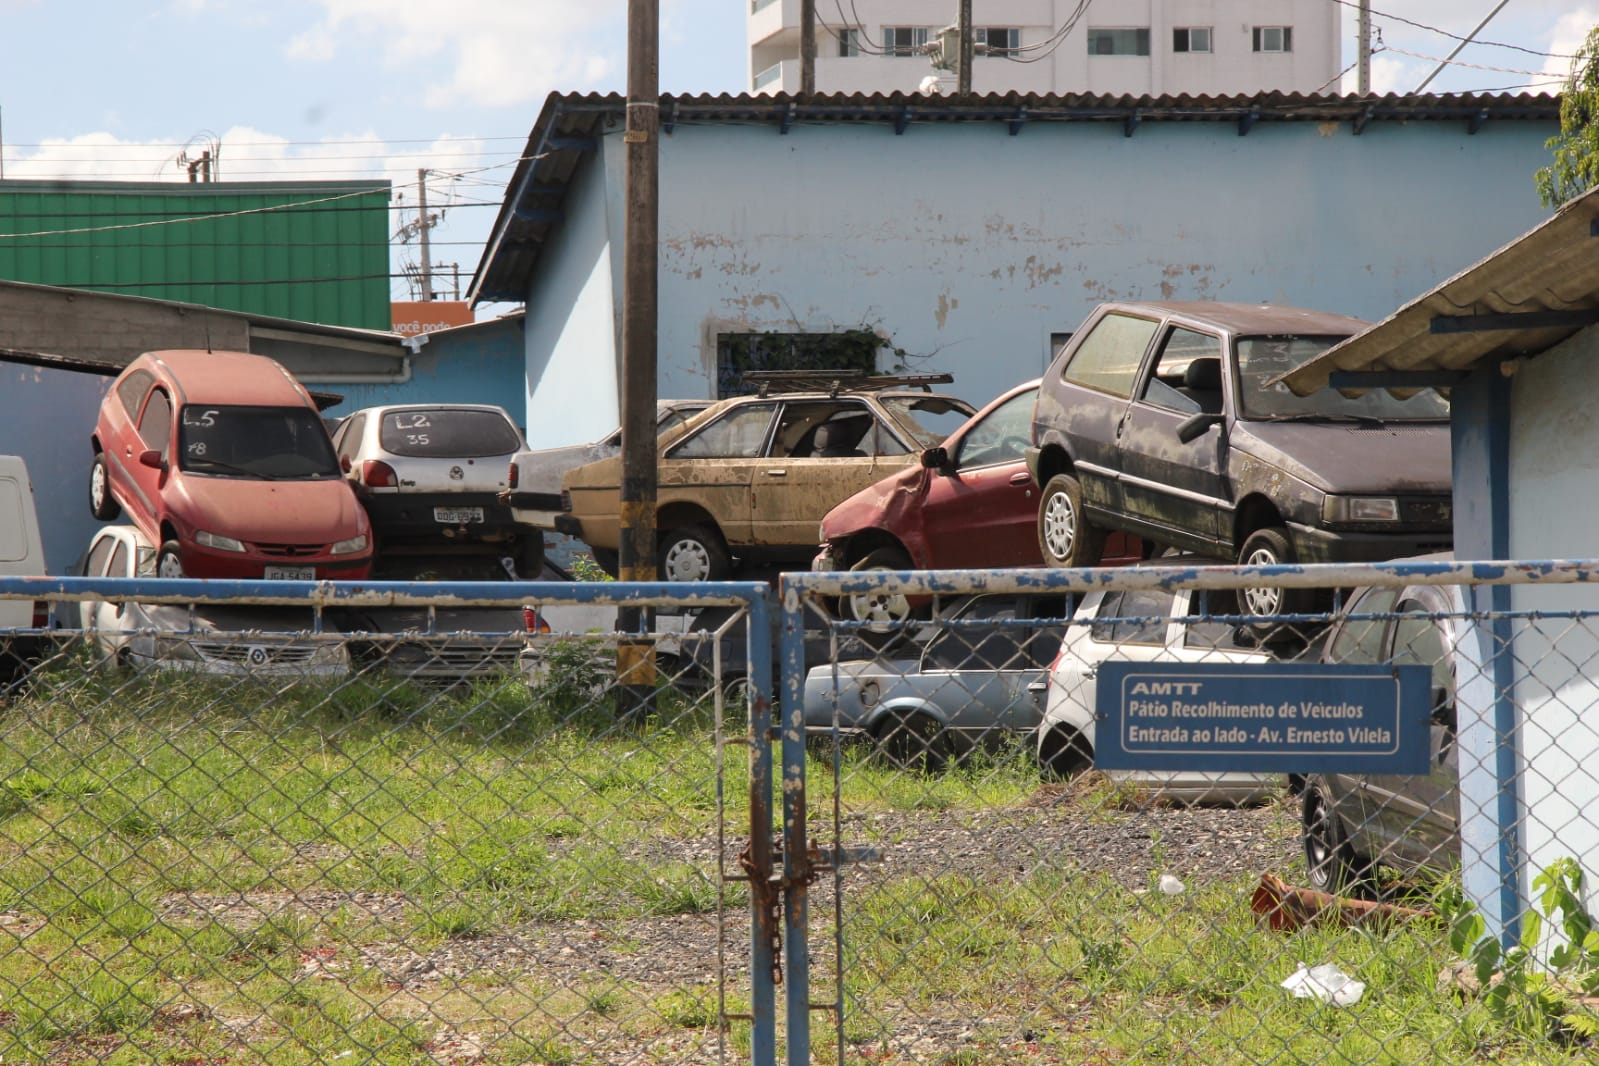 Pátio de carros da Autarquia Municipal de Trânsito e Transporte de Ponta Grossa